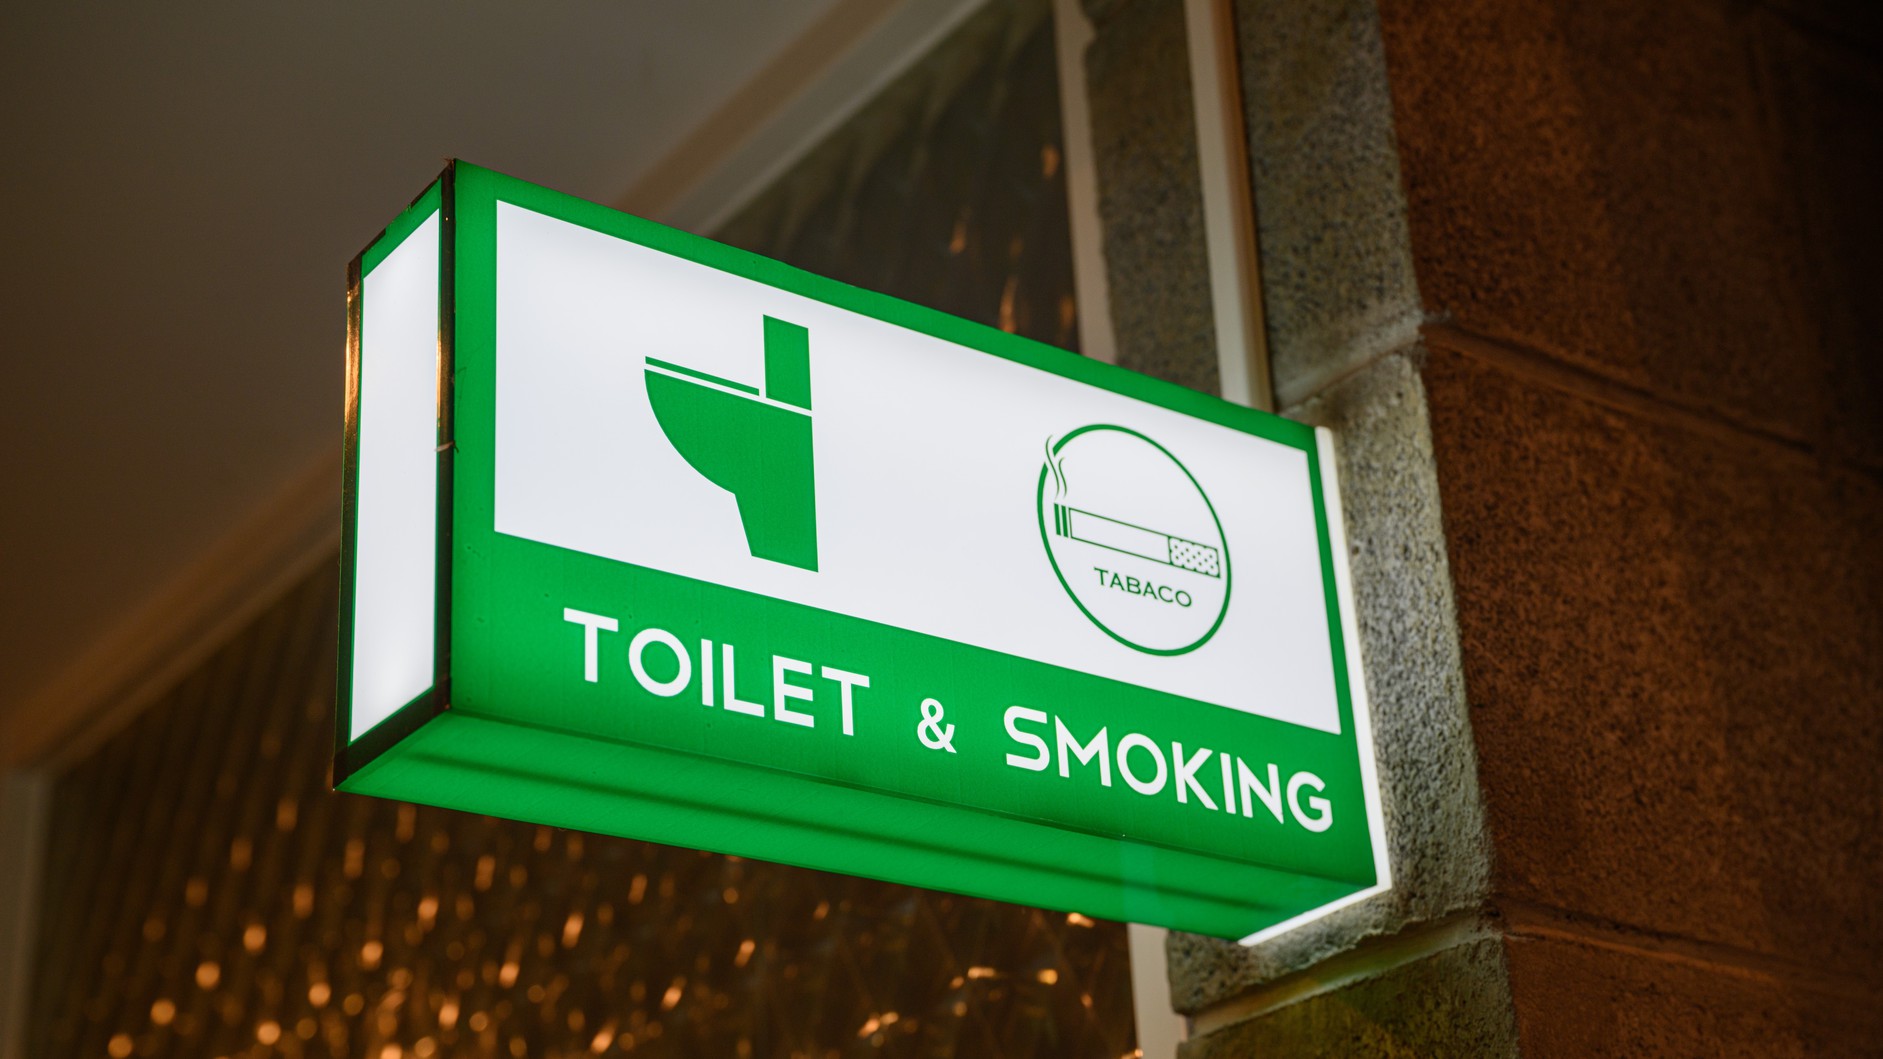 客室は全室禁煙です。お煙草は2F喫煙コーナーでお願いします。